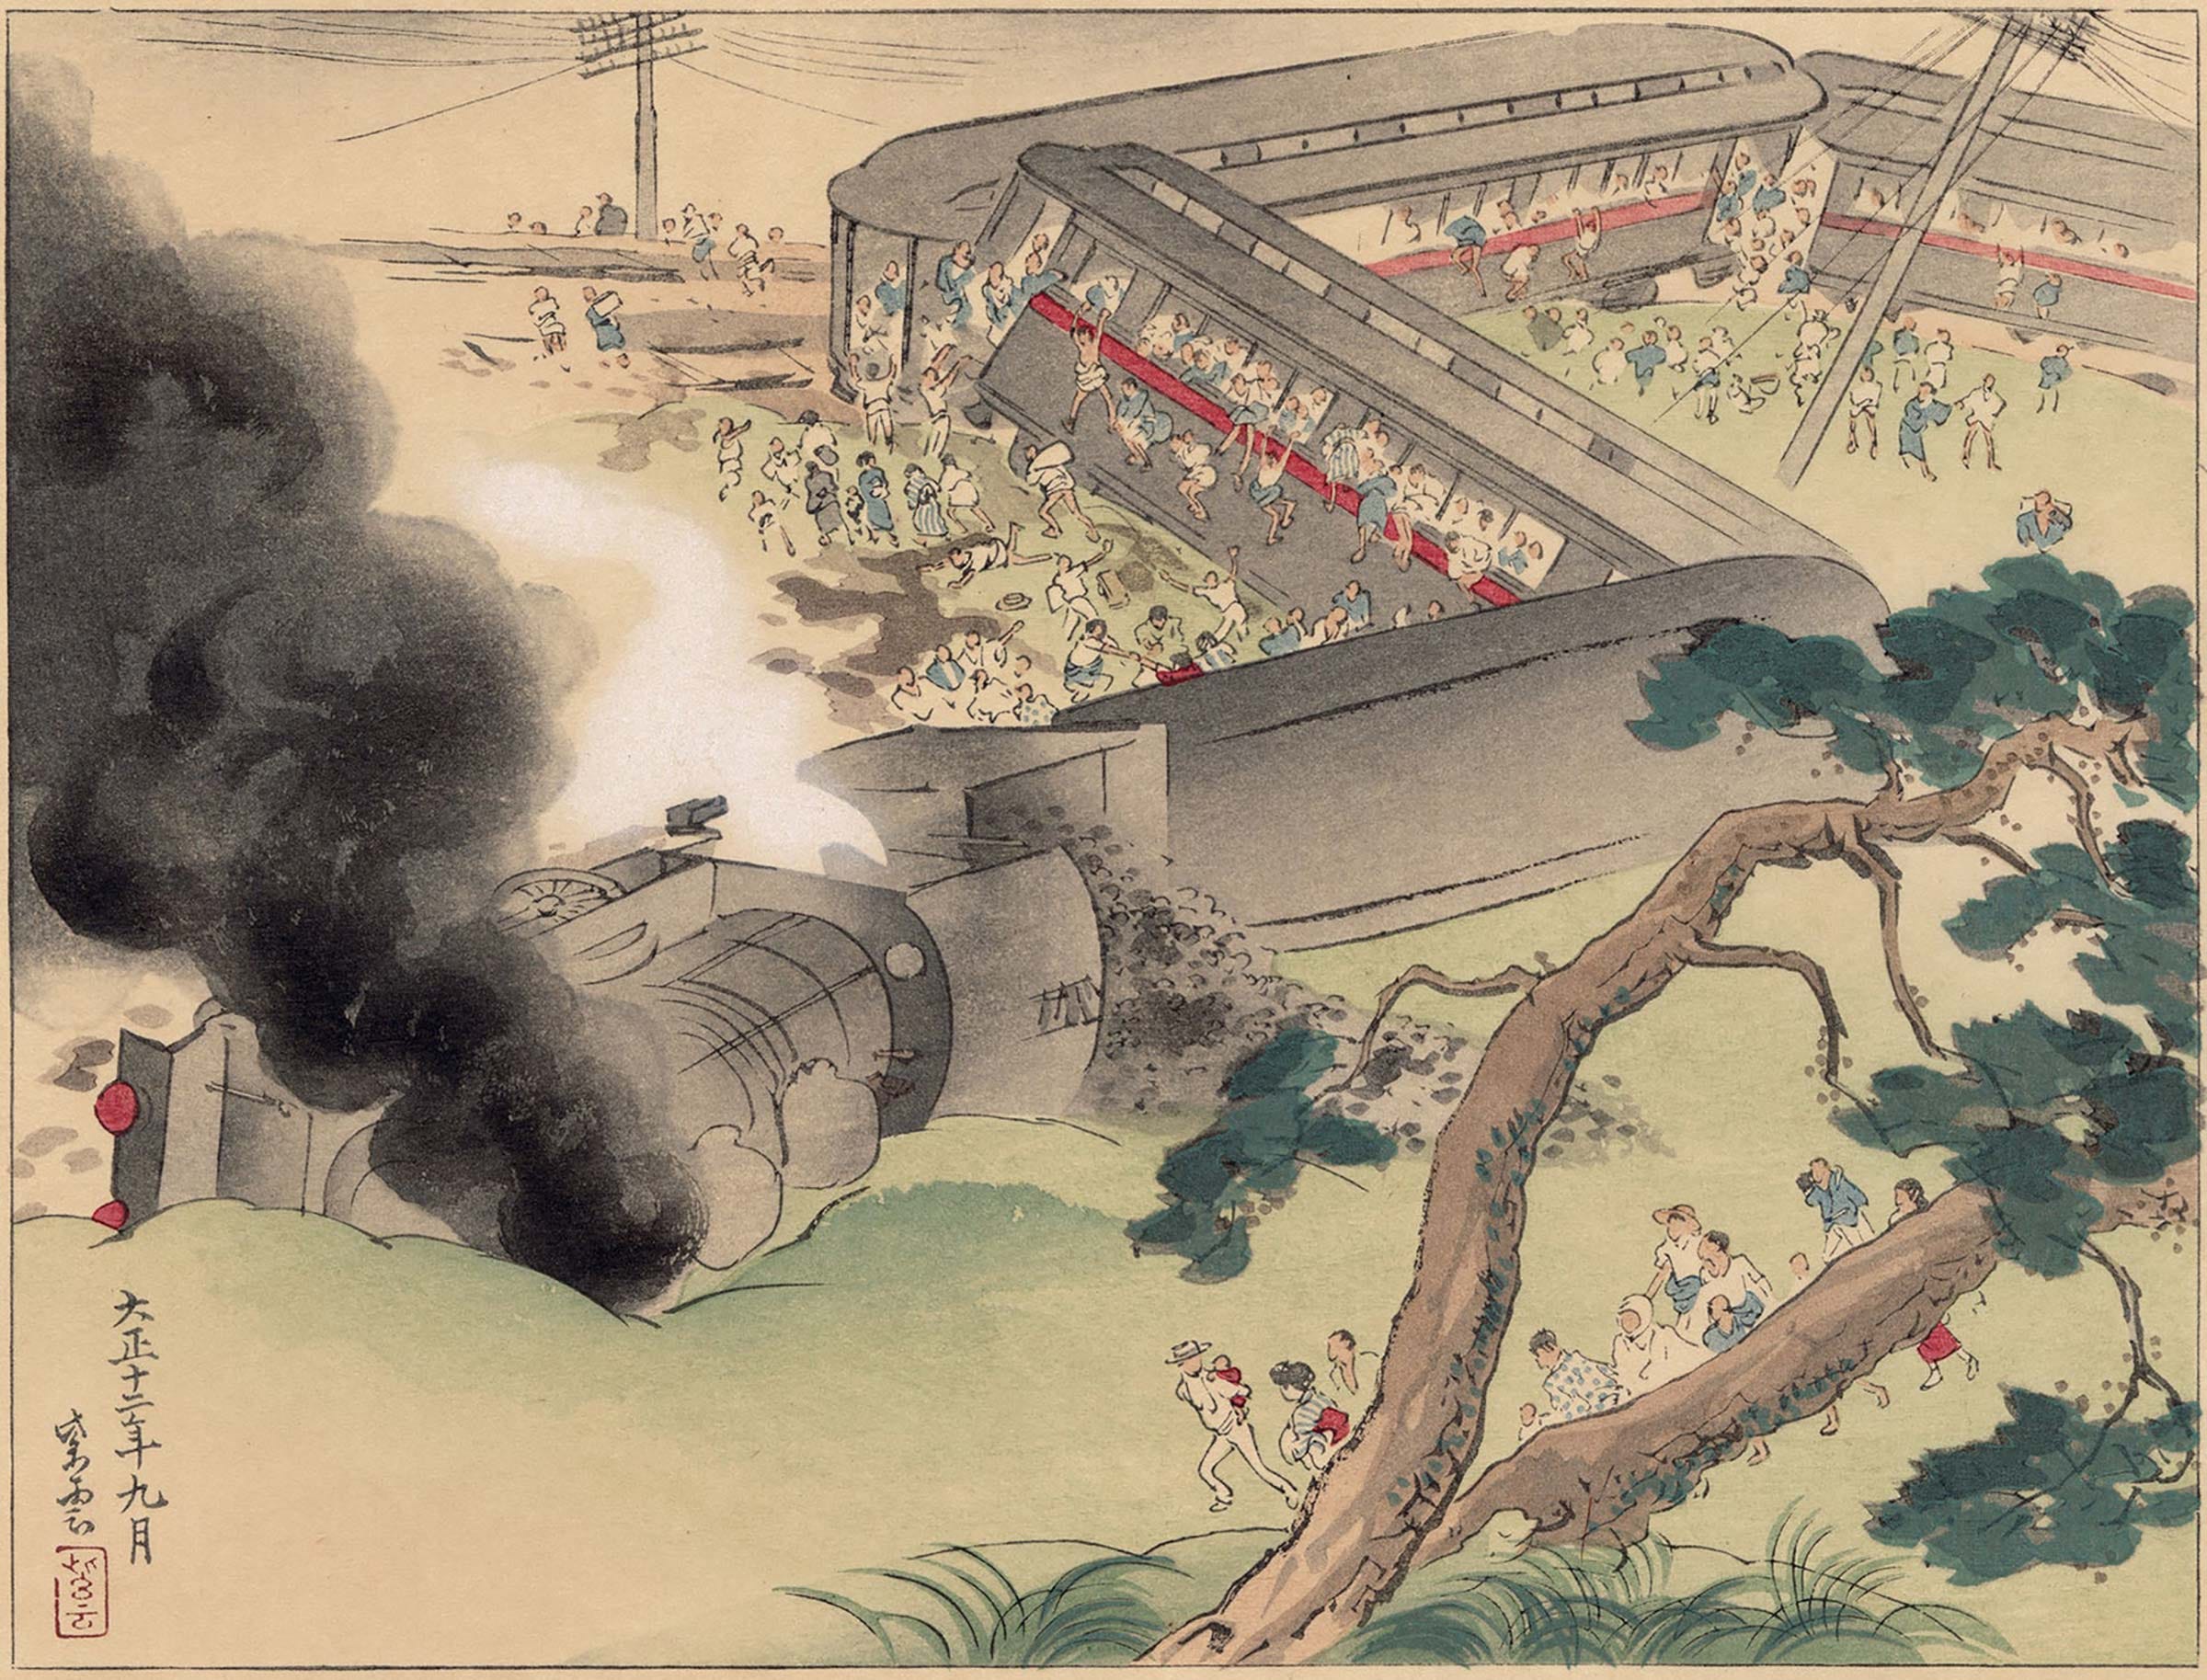 Ukiyoe woodblock print of the Great Kantō Earthquake